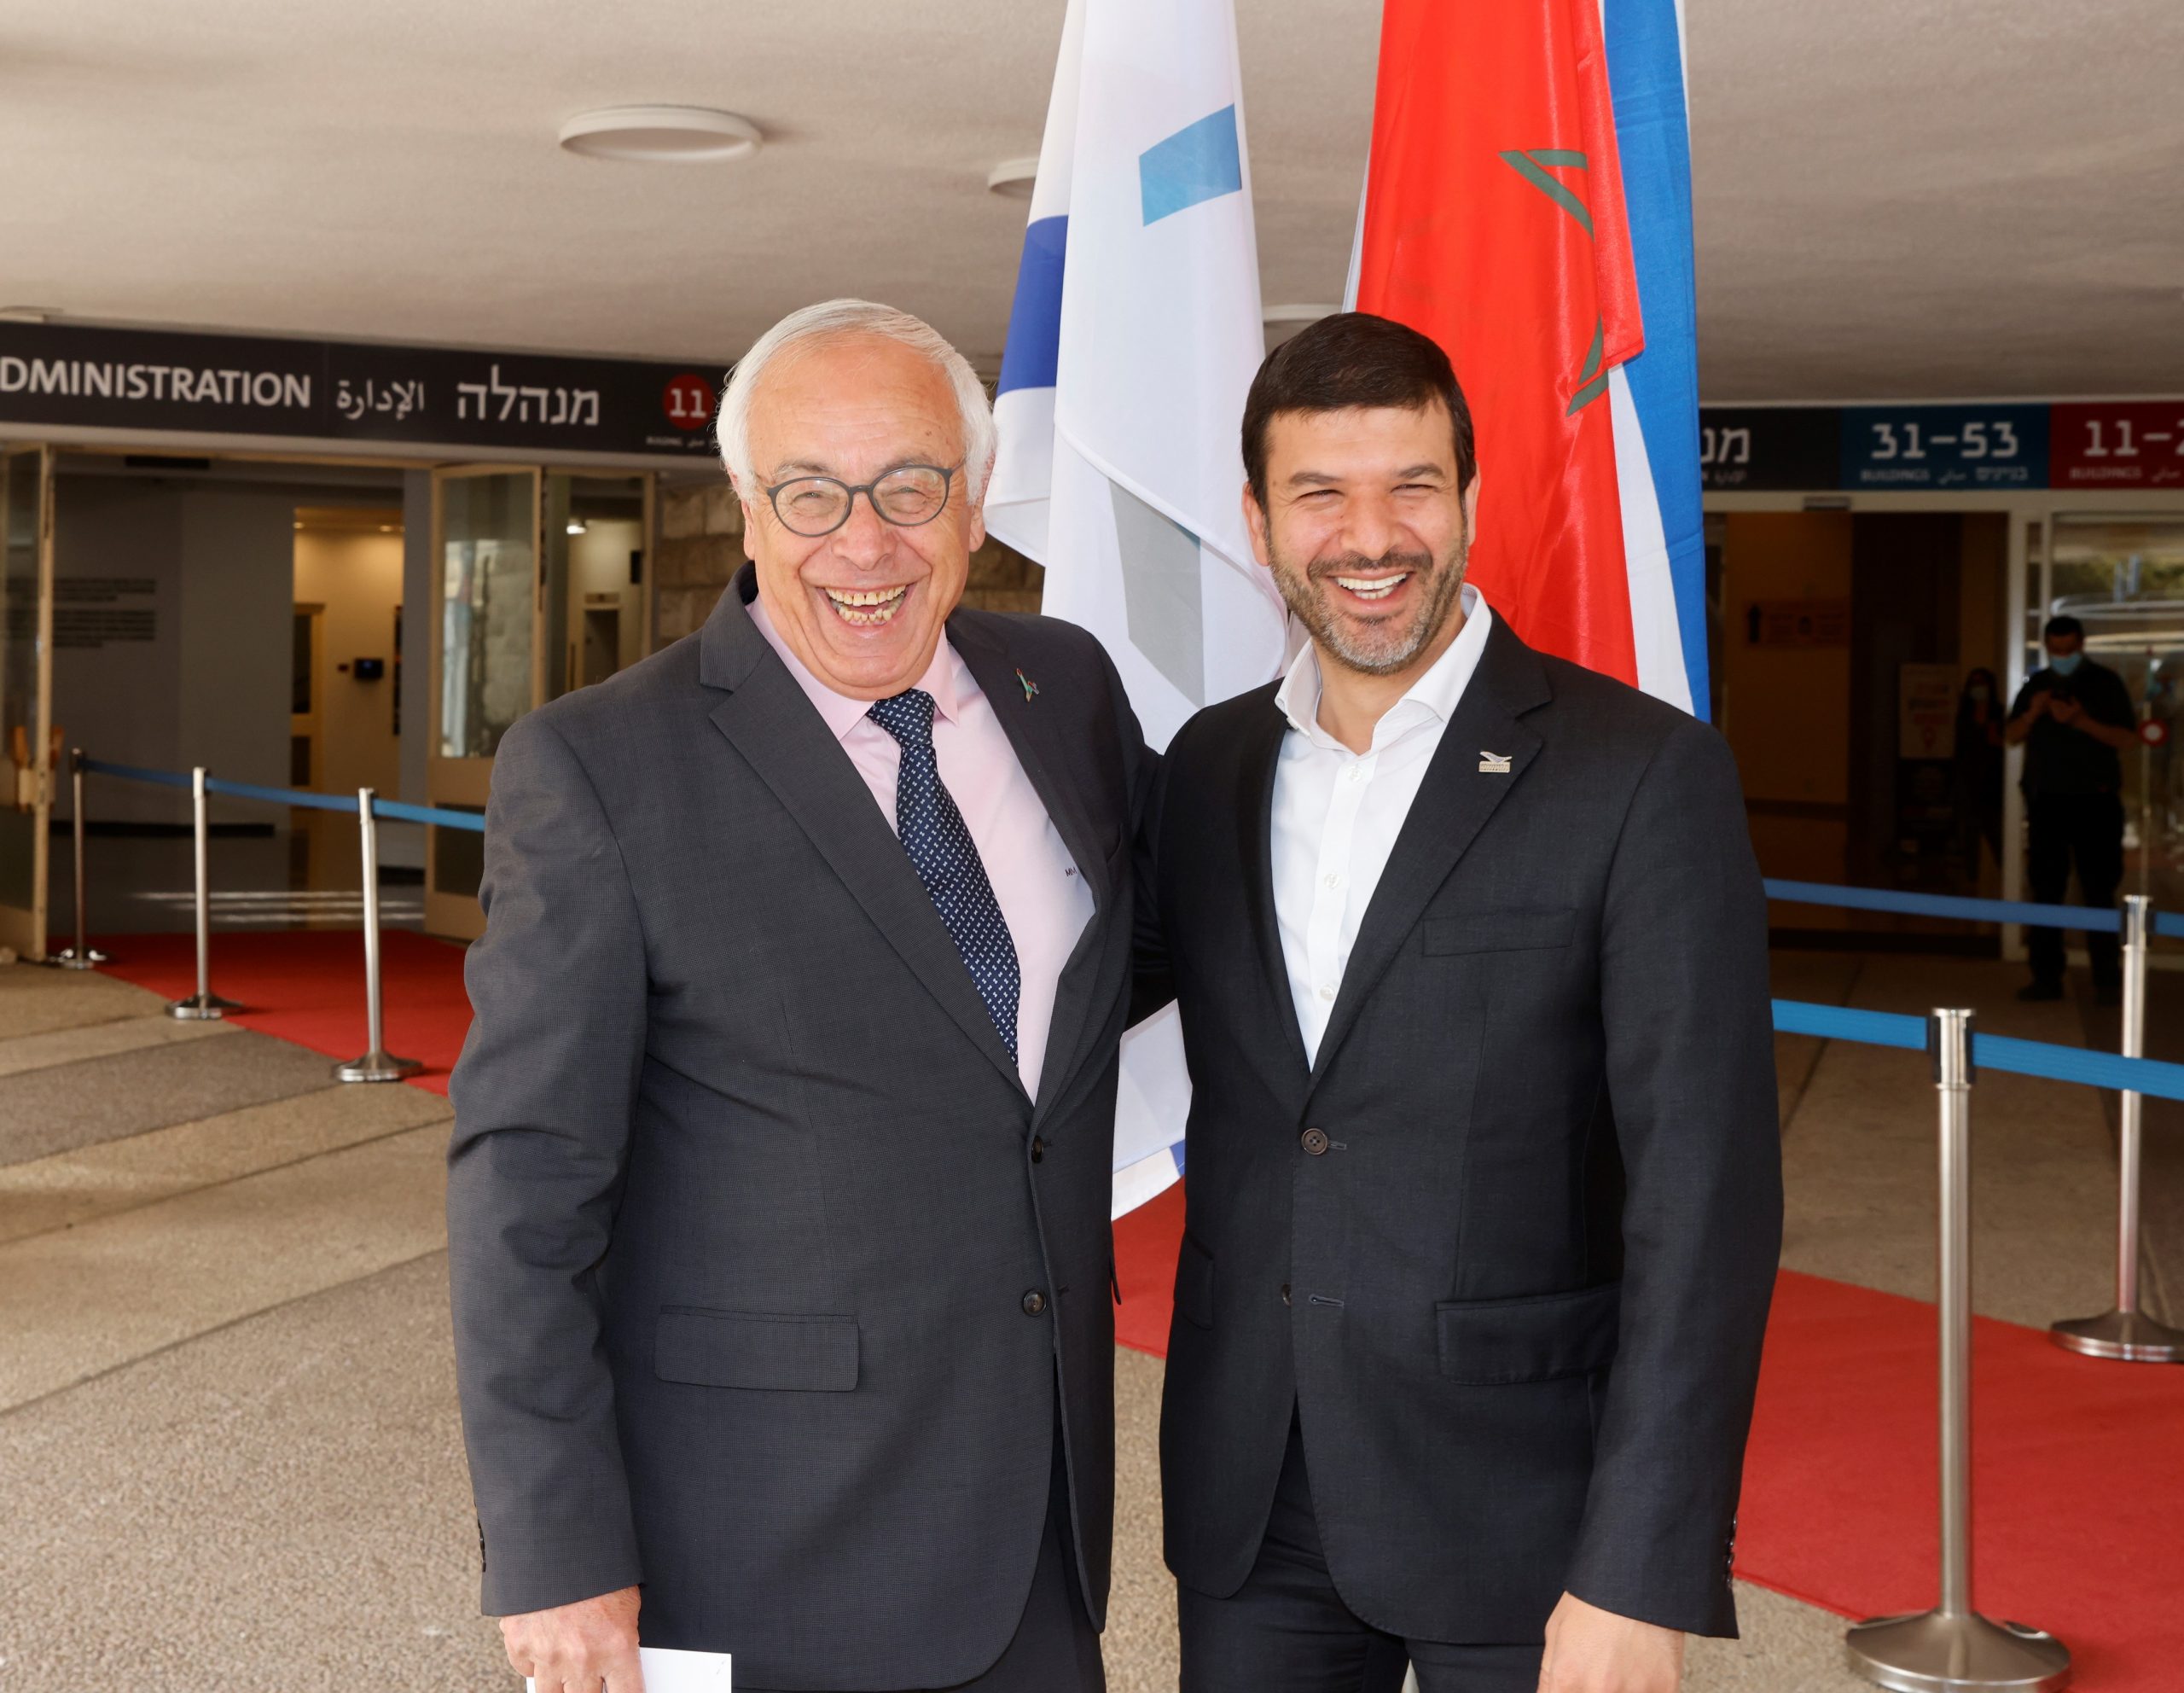 El vicepresidente de HUJI, Embajador Yossi Gal (izq.), y el presidente de UM6P, Dr. Hicham El Habti (der.) - Foto: Yossi Zamir/Universidad Hebrea